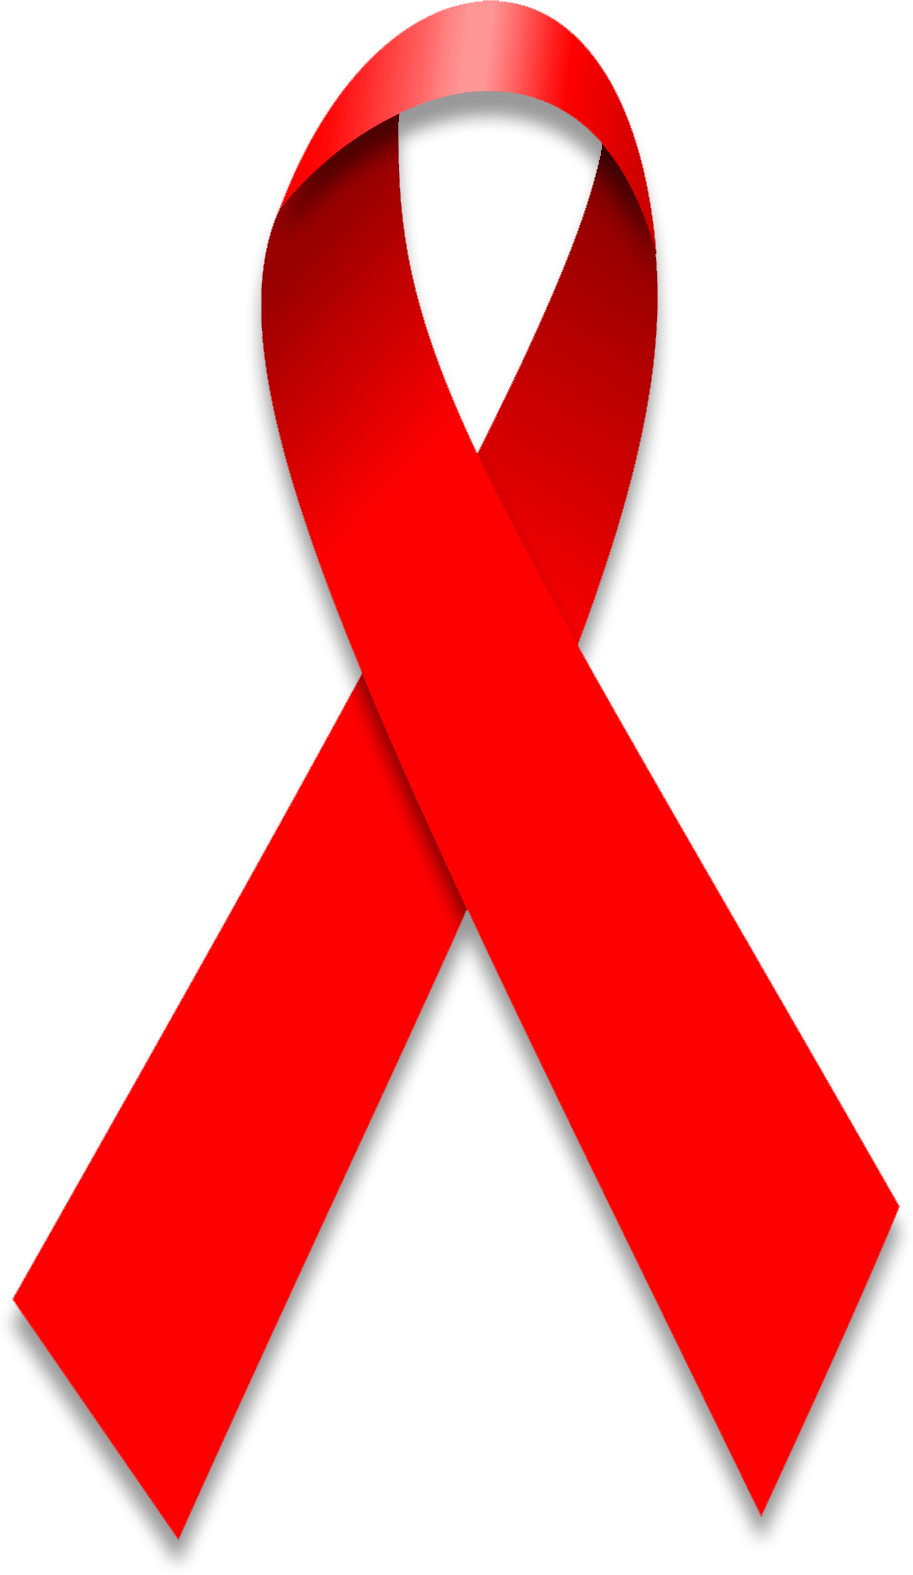 Aids Logo - Hiv Aids PNG Transparent Hiv Aids.PNG Images. | PlusPNG